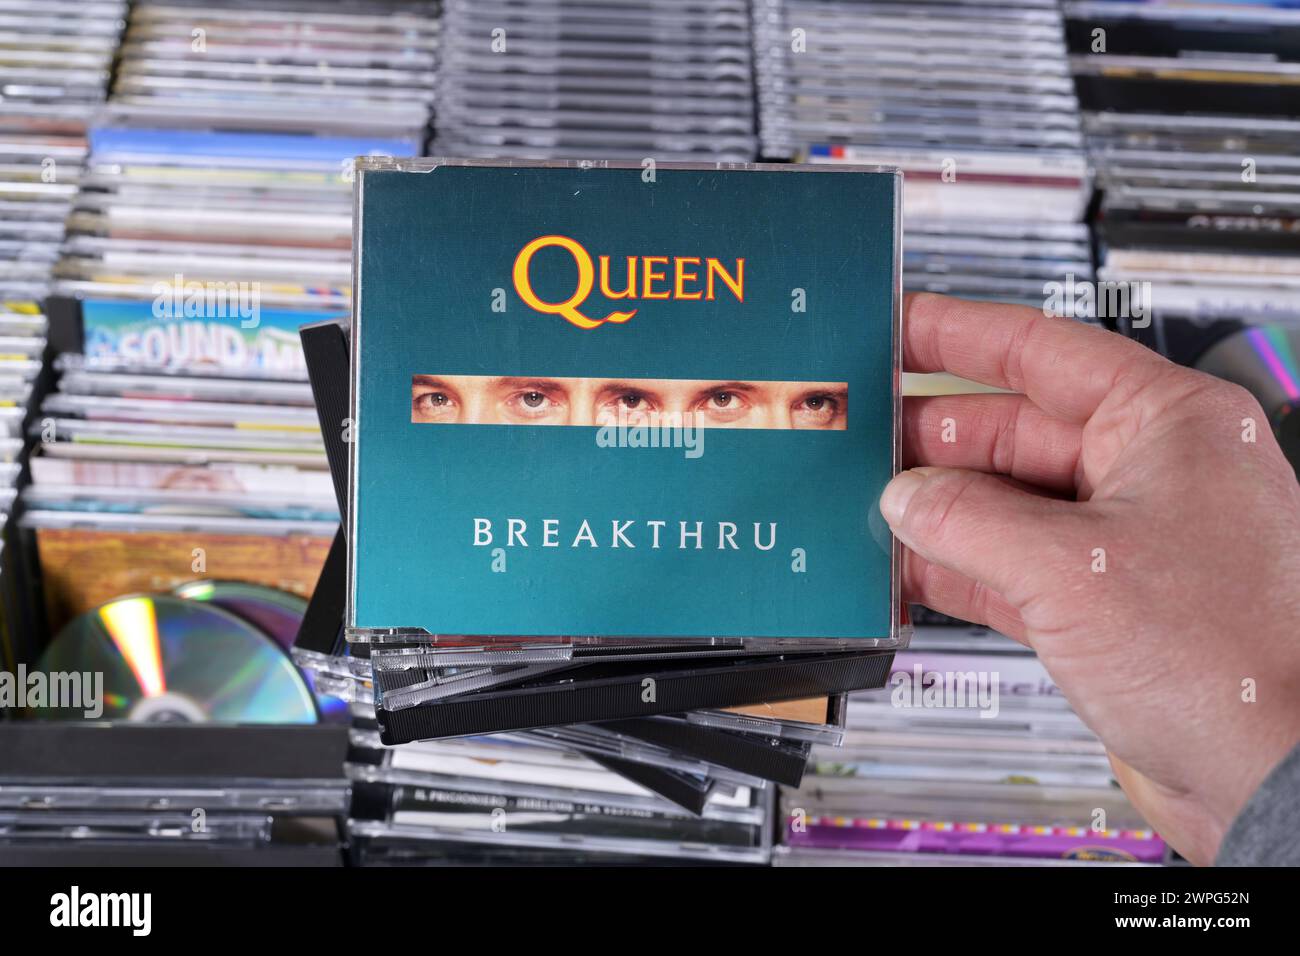 CD Single: Queen - Breakthru Stock Photo